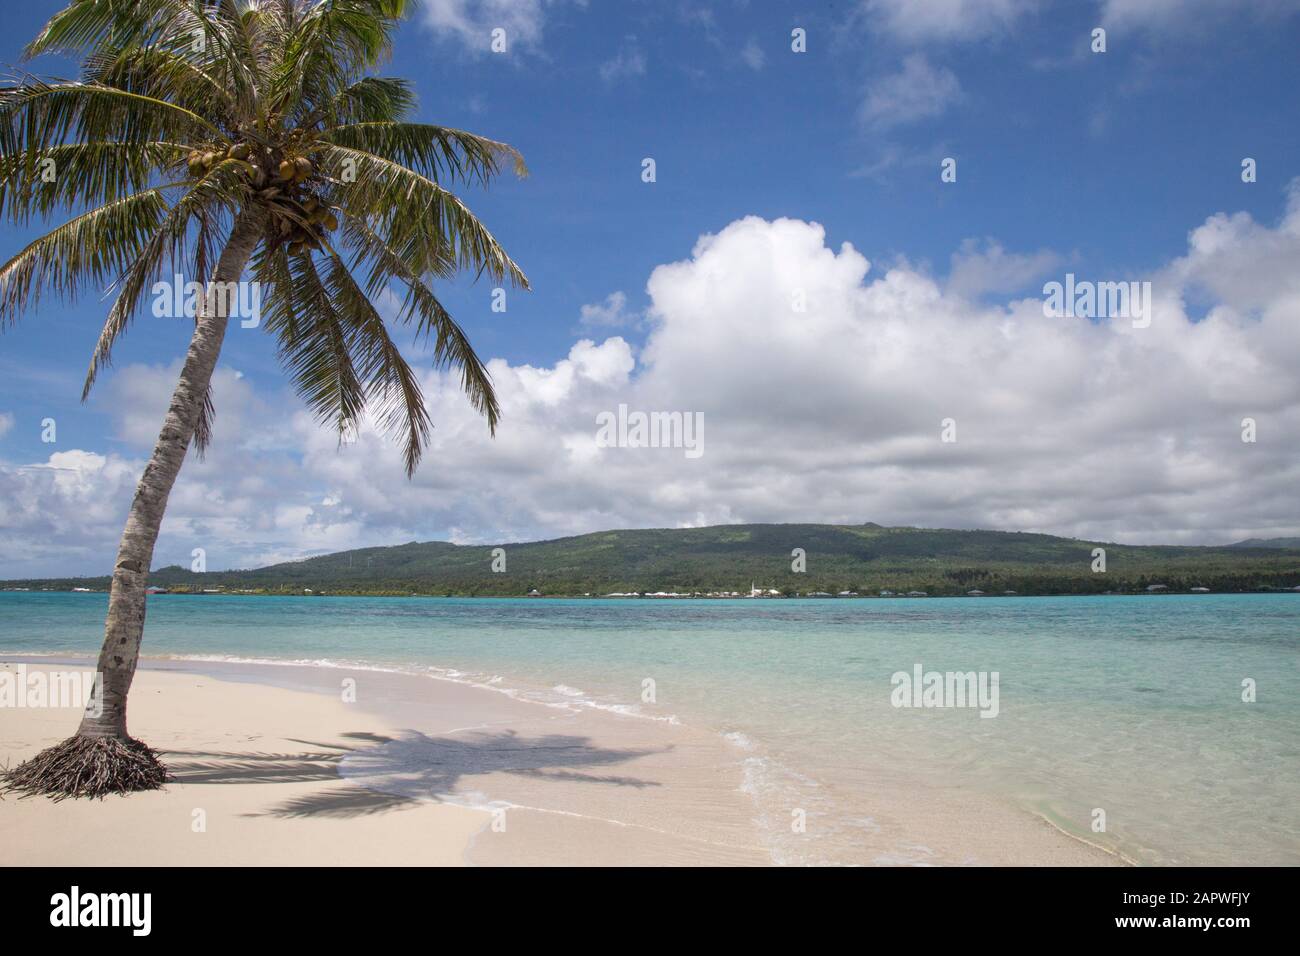 Palme pendanti su spiaggia tropicale di sabbia bianca con acque cristalline blu Foto Stock